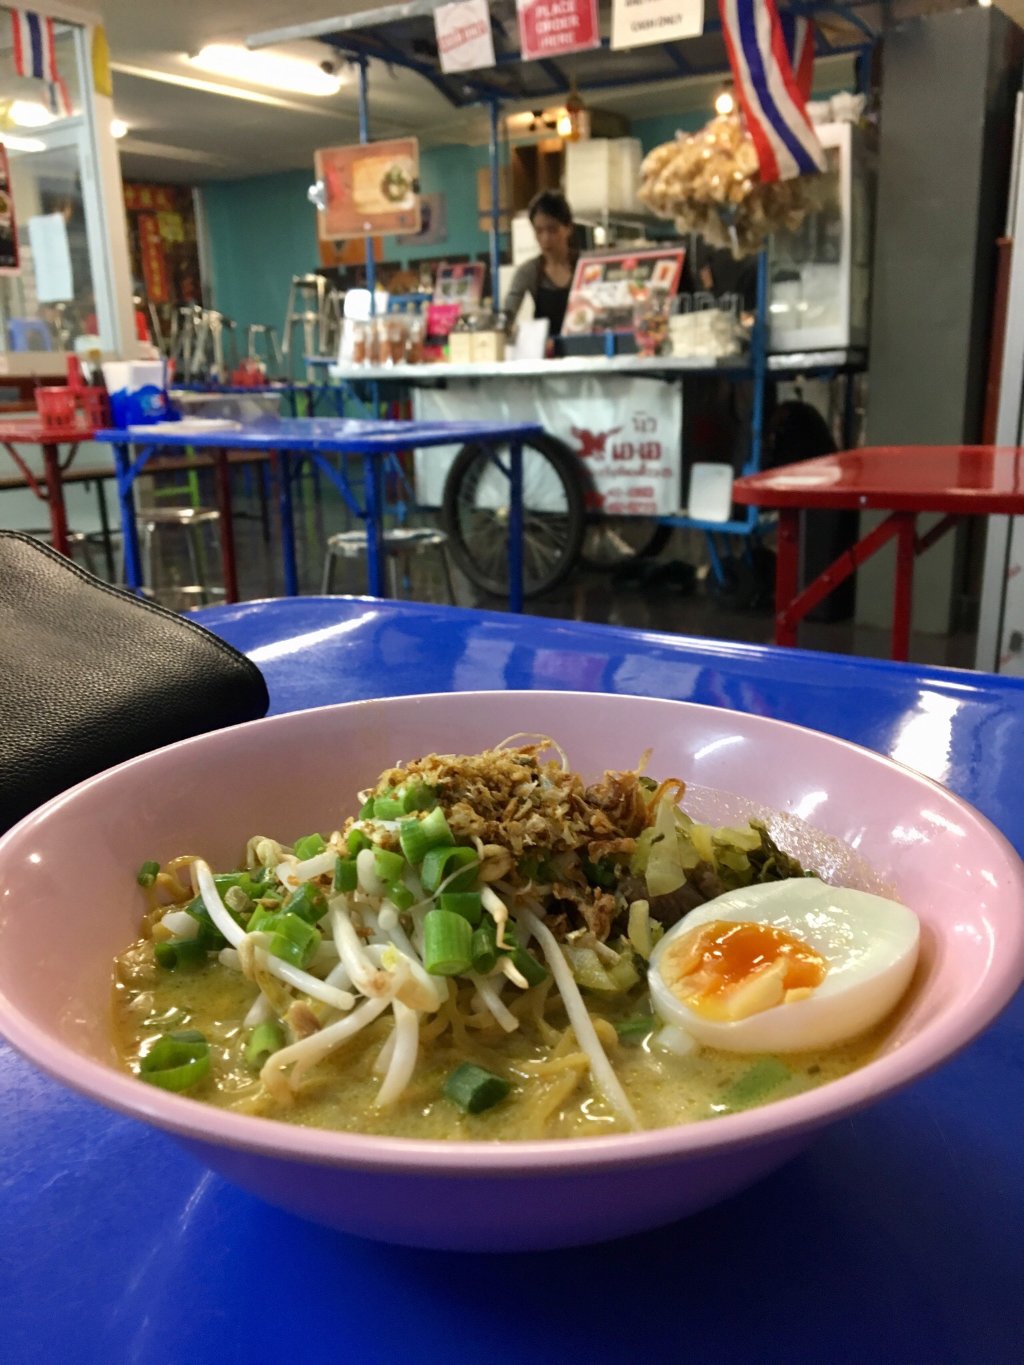 Soi 38 món ăn đường phố Thái Lan rẻ nhất tại Melbourne 4.jpg